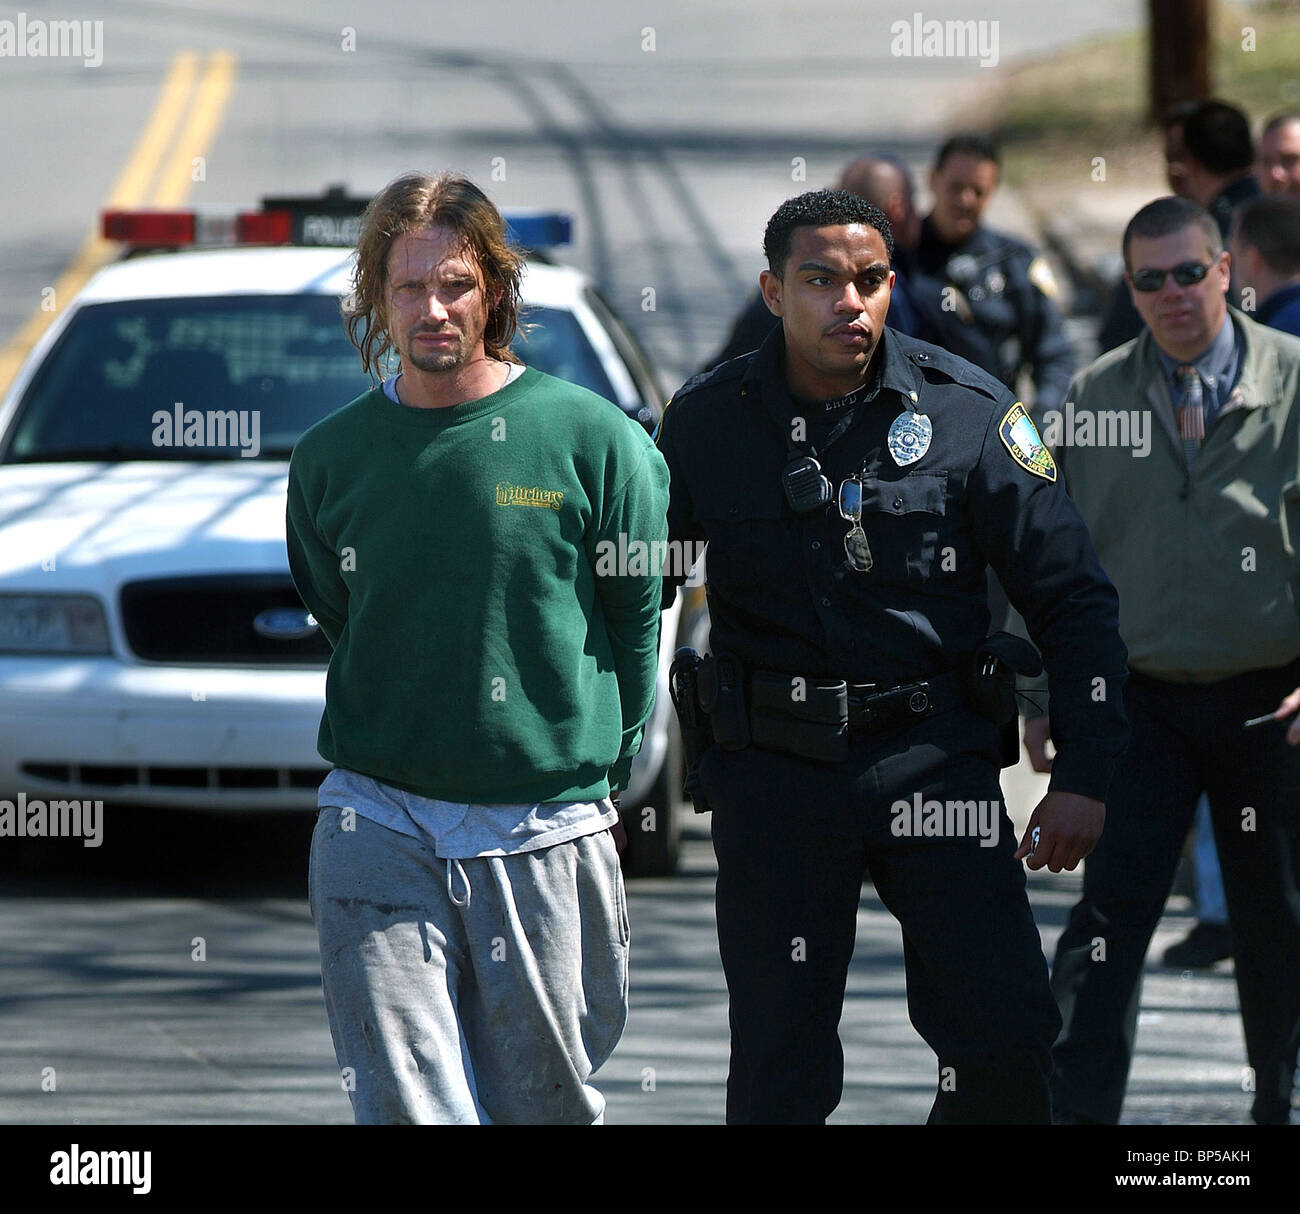 Capture de la police d'un cambriolage suspect après une course poursuite à New Haven, CT USA Banque D'Images